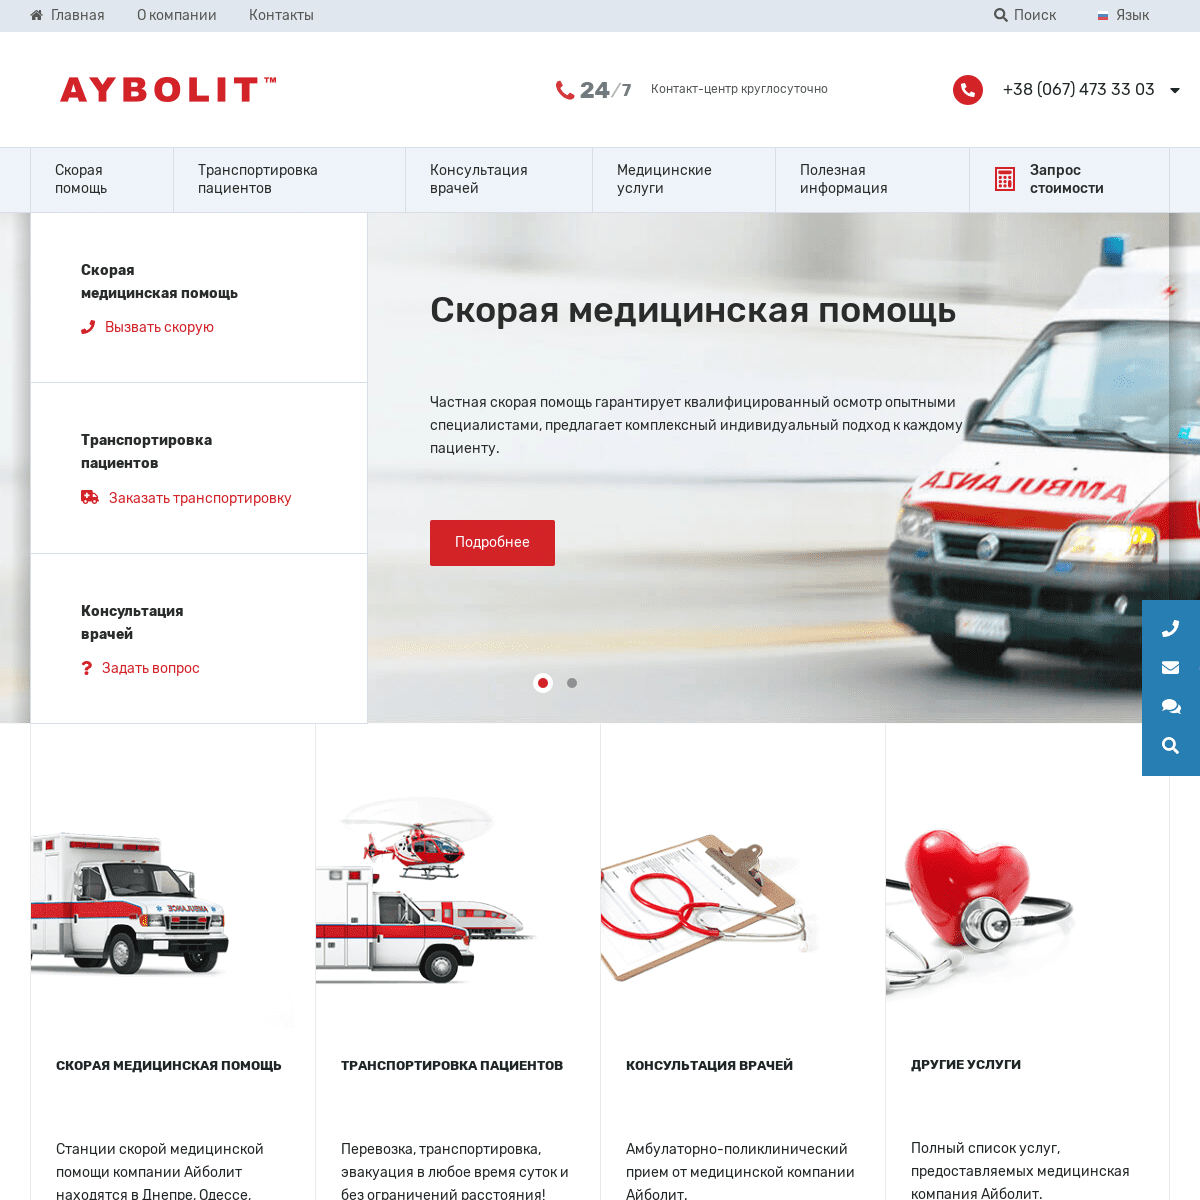 Aybolit (Айболит) - медицинская транспортировка больных, скорая помощь